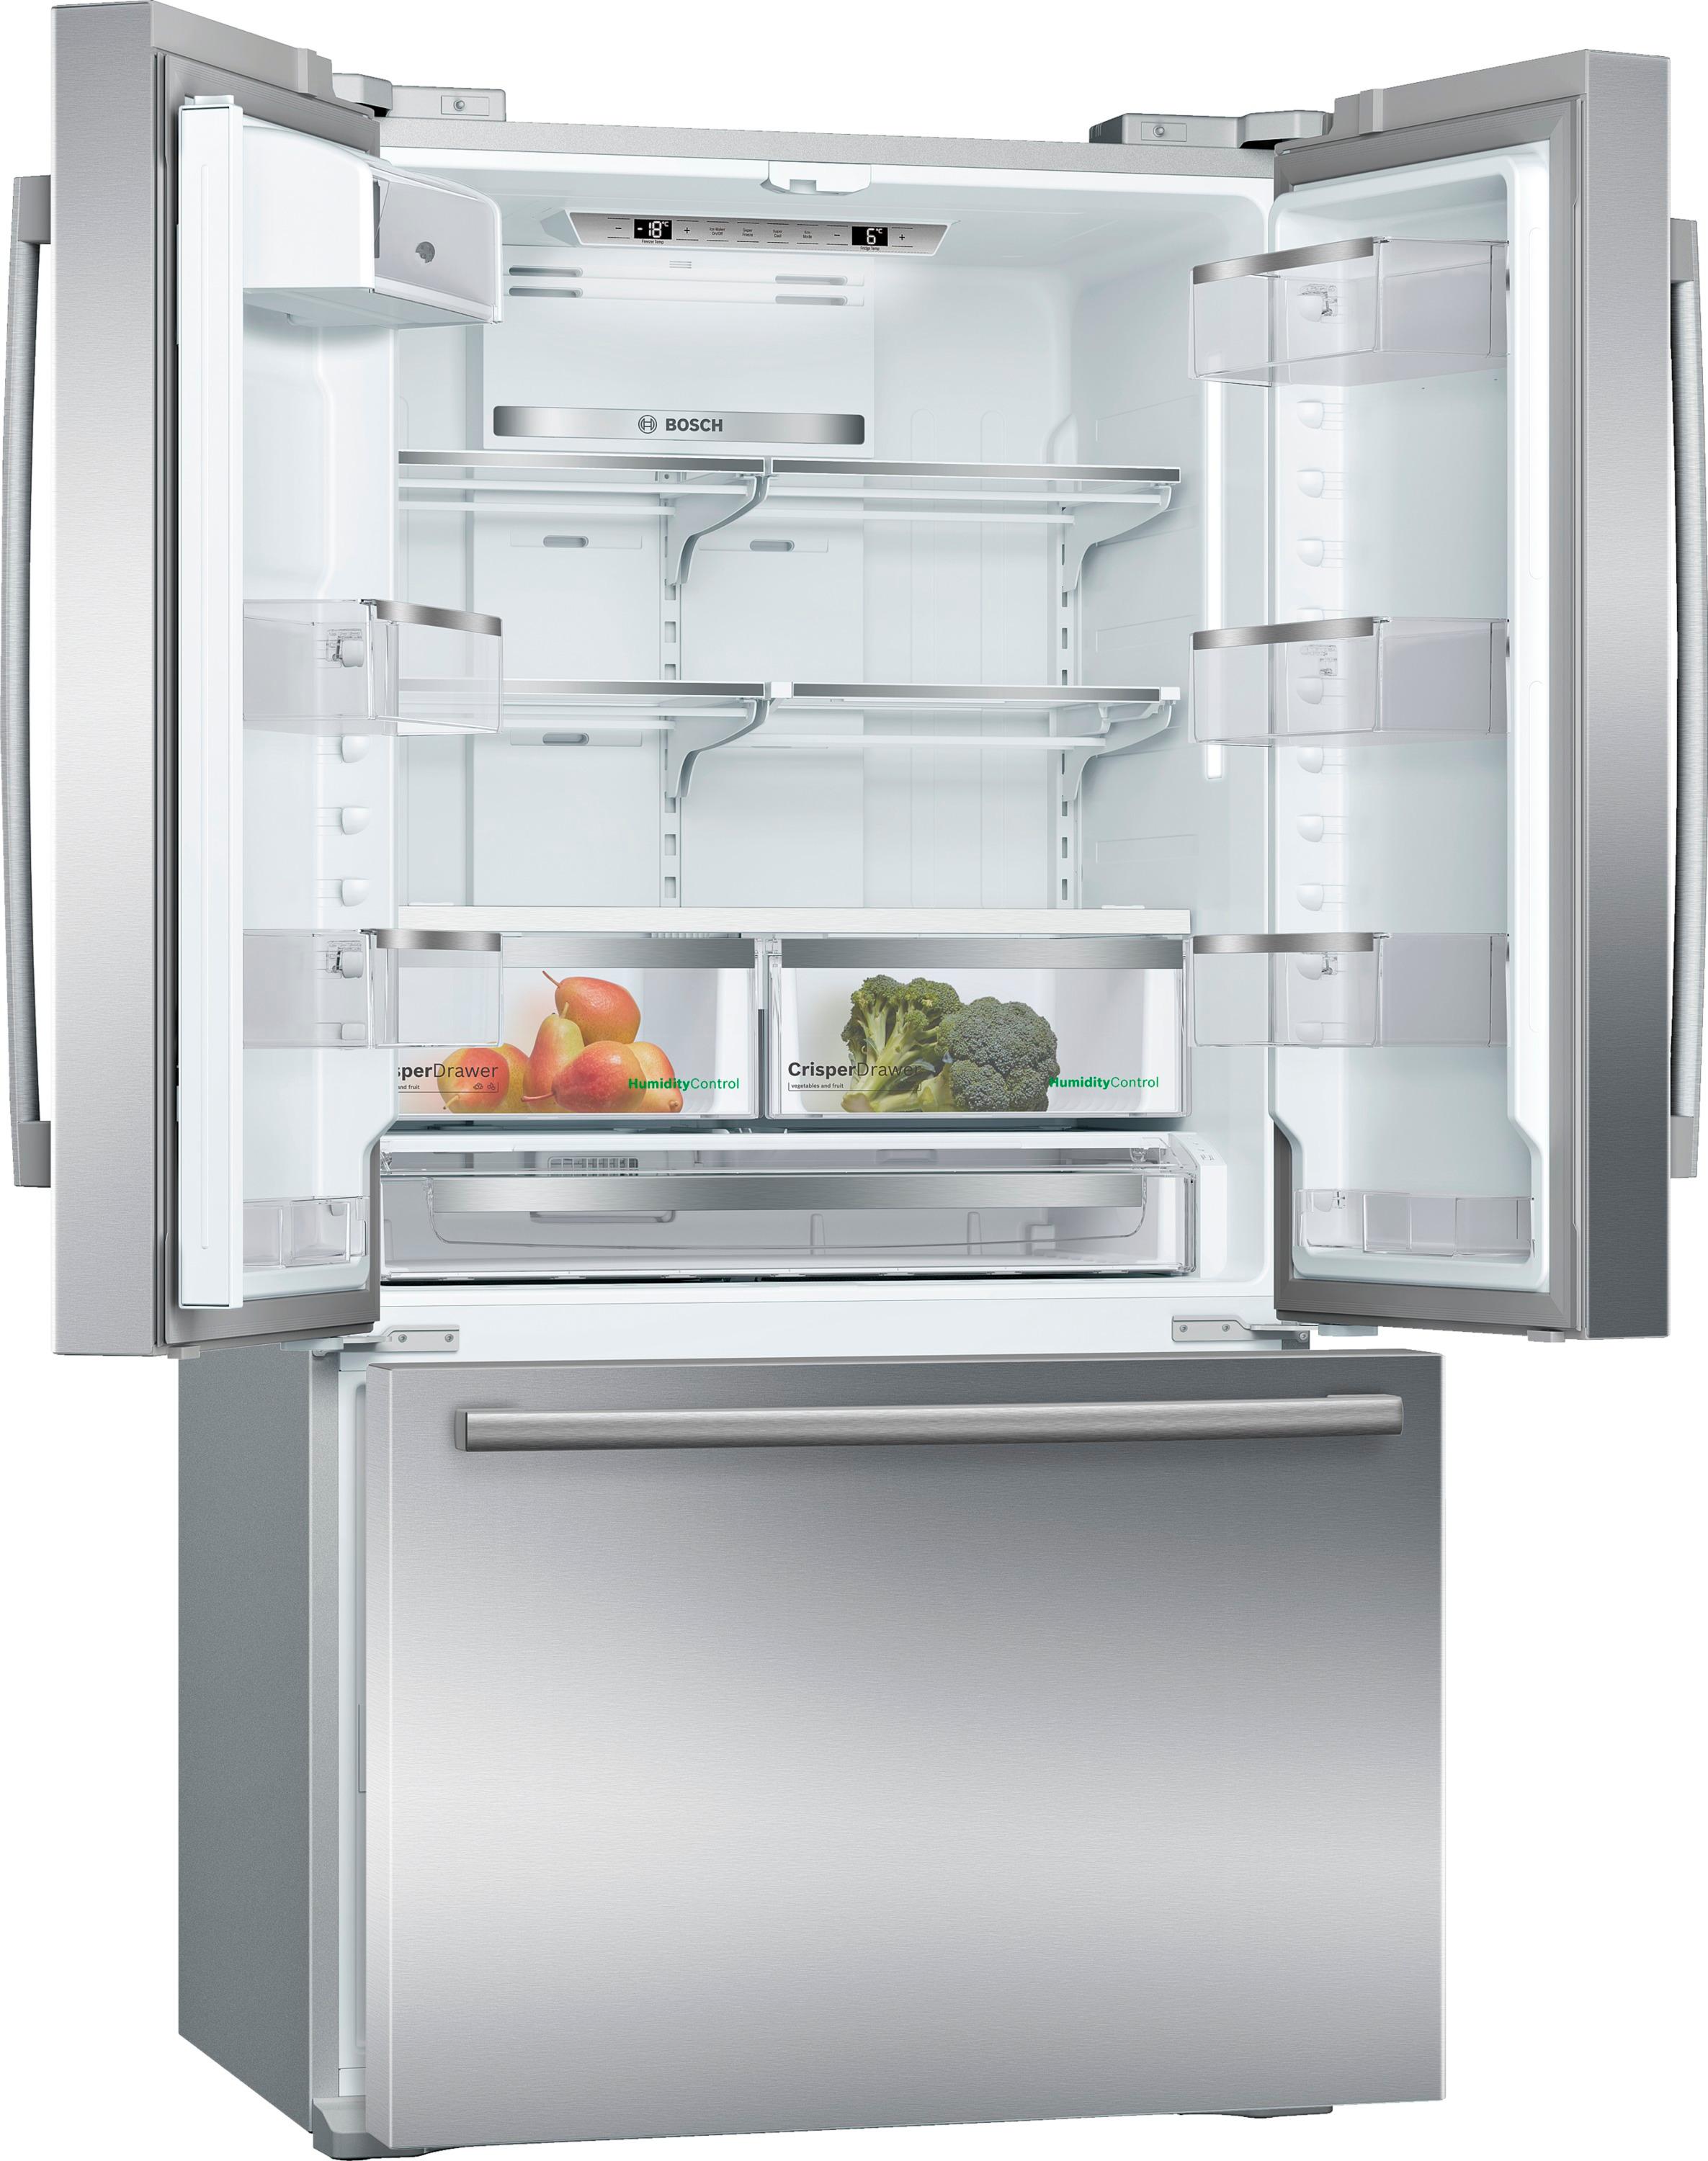 Customer Reviews: Bosch 800 Series 20.7 Cu. Ft. Bottom-Freezer Counter ...